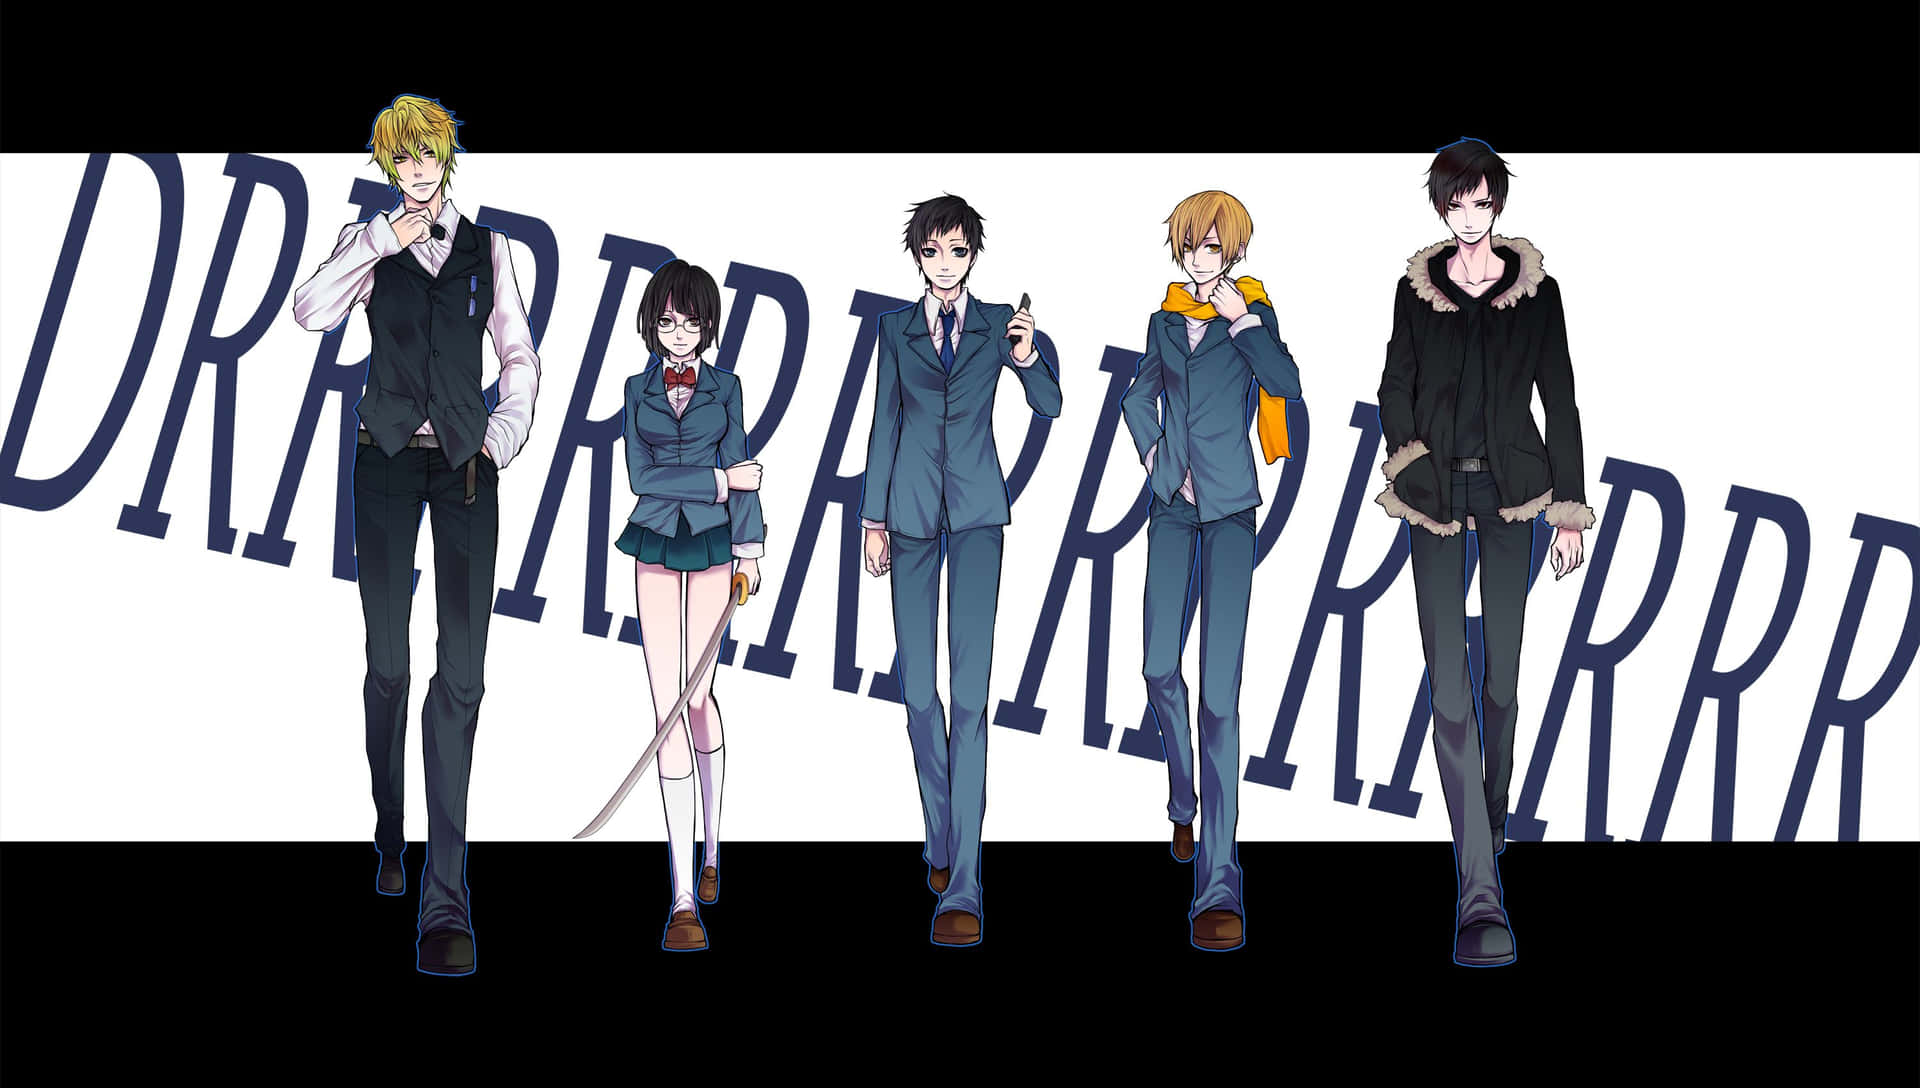 Fondode Pantalla De Los Personajes De La Serie De Anime Cargada De Acción Durarara! Fondo de pantalla